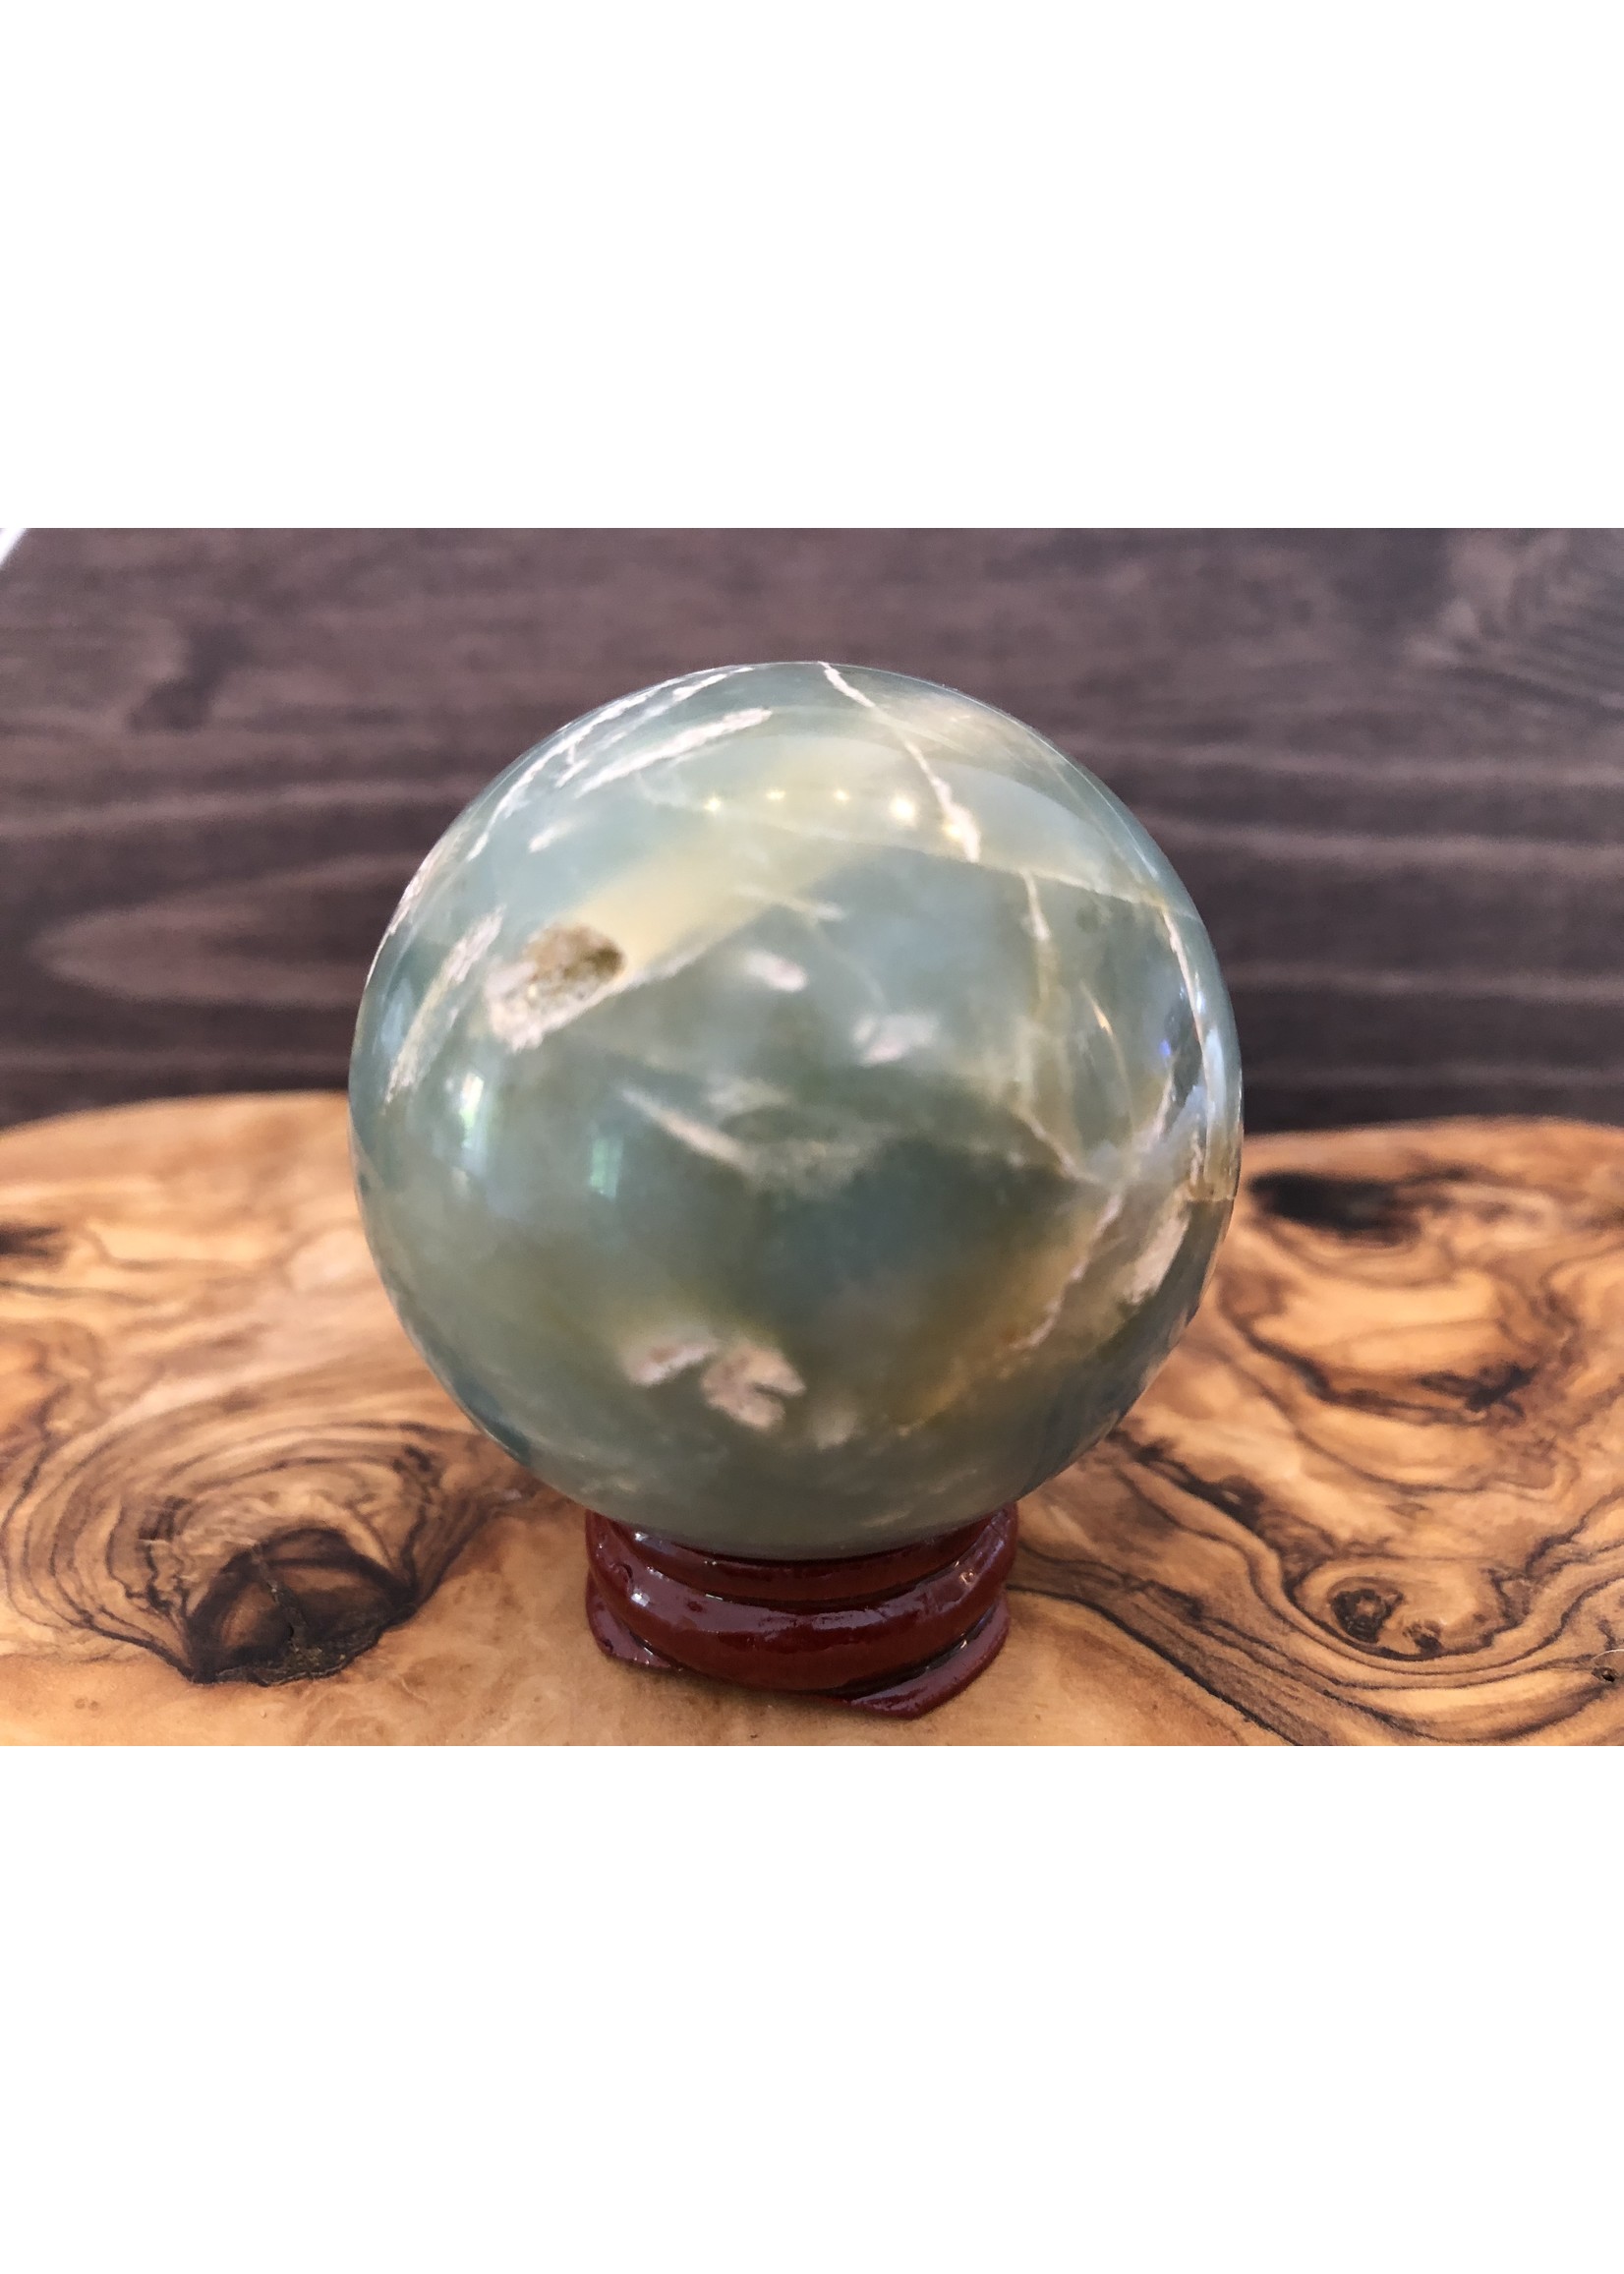 large calcite caraïbe sphère, ressemble à un globe terrestre,  purifie et aligne les chakras, équilibre les énergies yin et yang